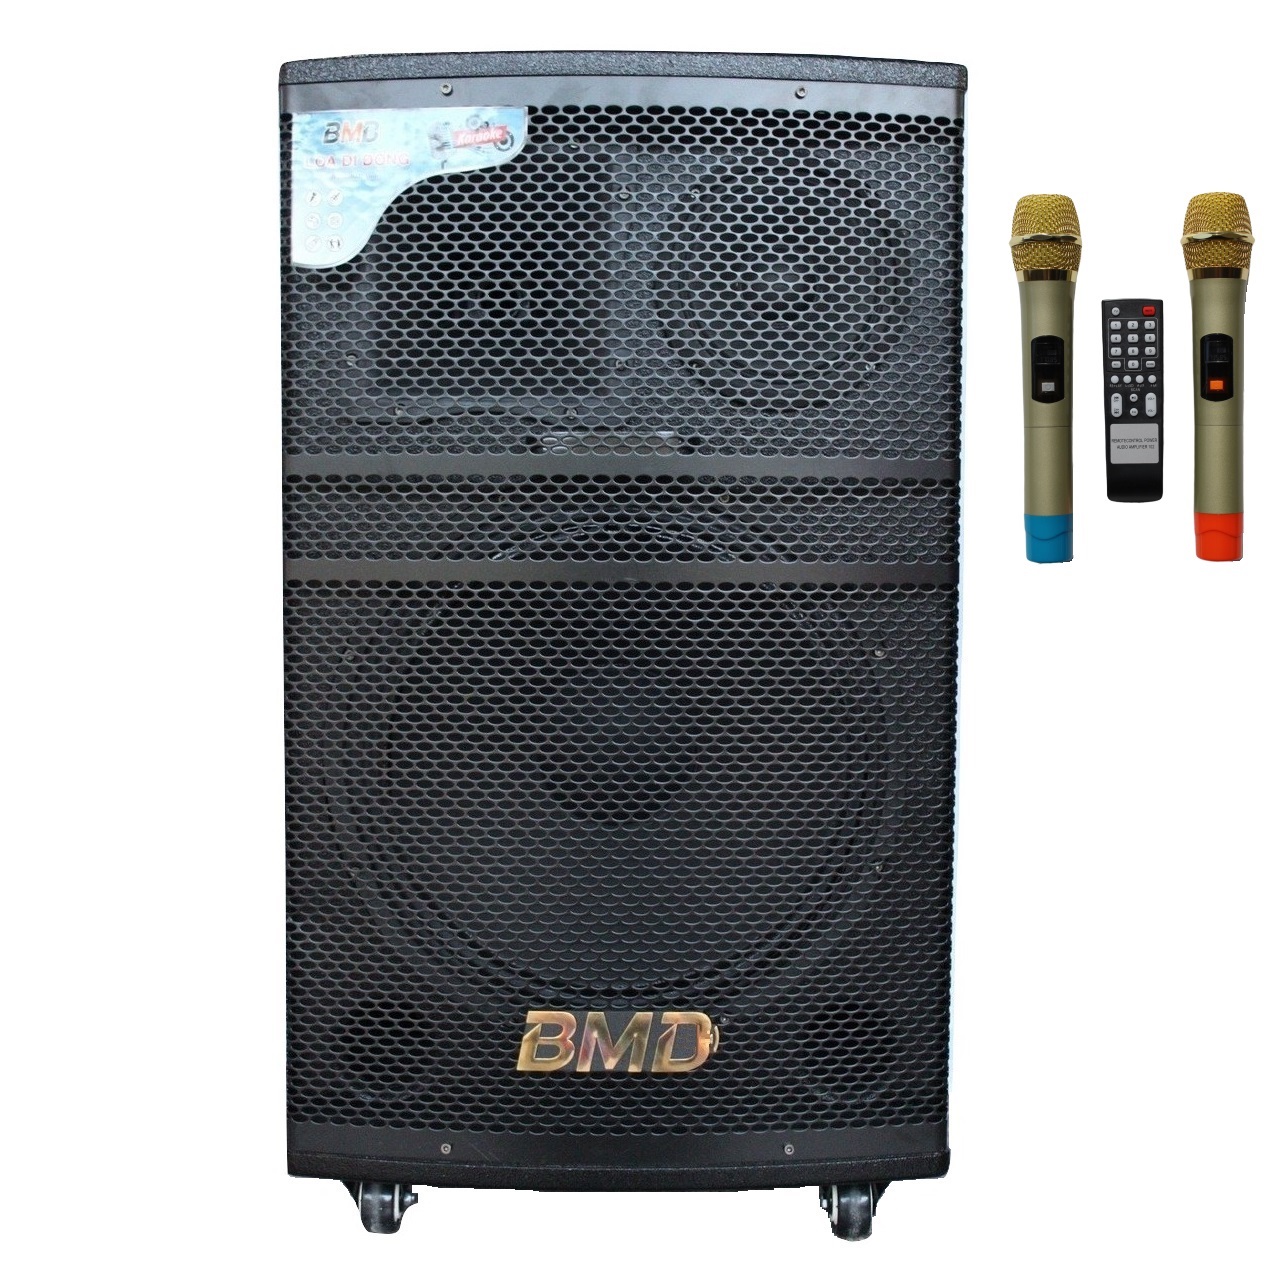 Loa Kéo Di Động Karaoke Bass 40 BMD LK-40B80 (800W) 4 Tấc - Chính Hãng